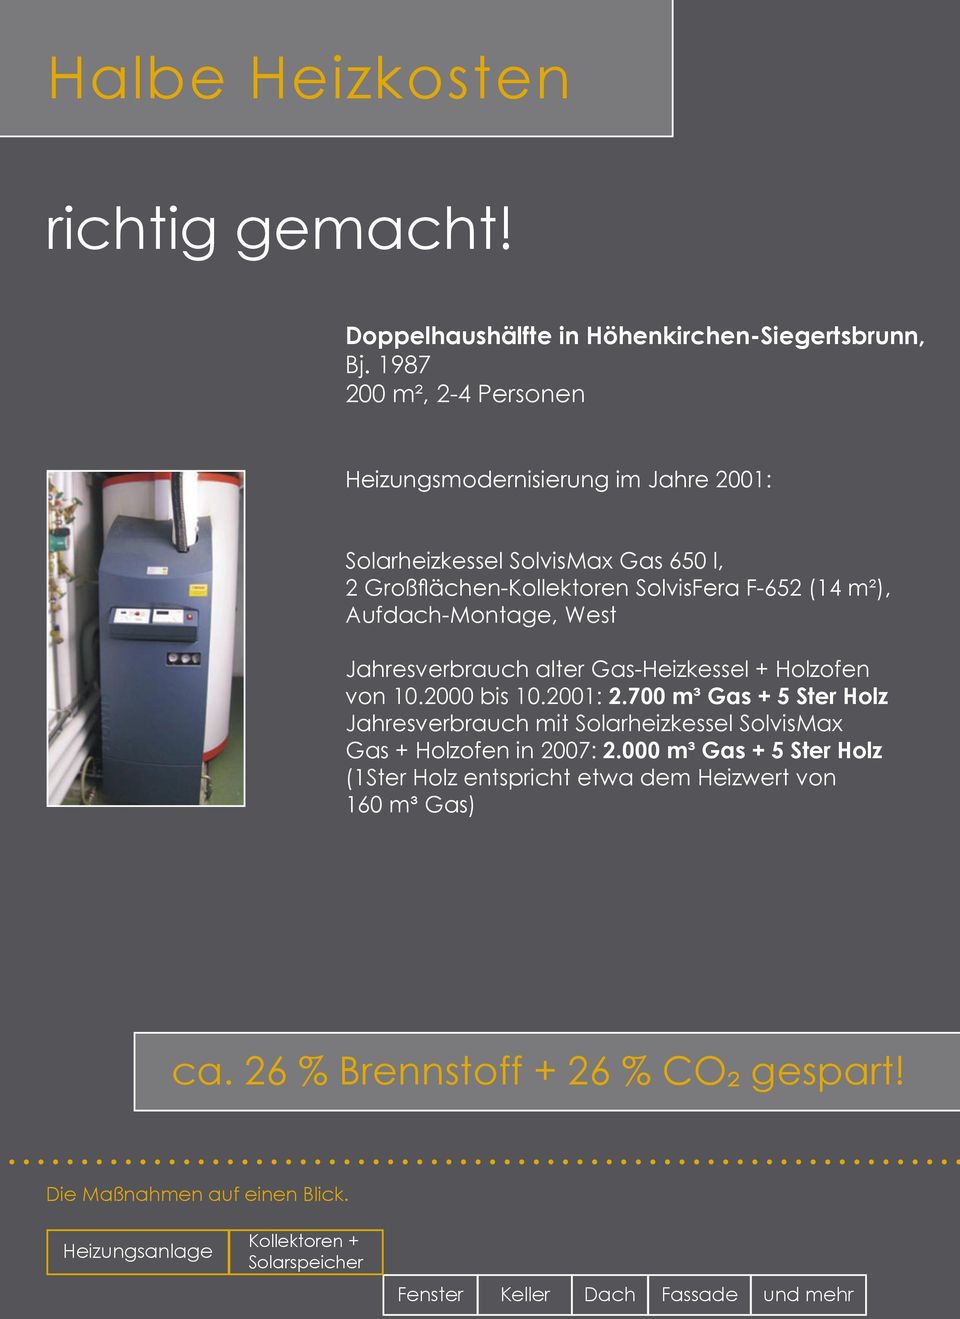 Aufdach-Montage, West Jahresverbrauch alter Gas-Heizkessel + Holzofen von 10.2000 bis 10.2001: 2.